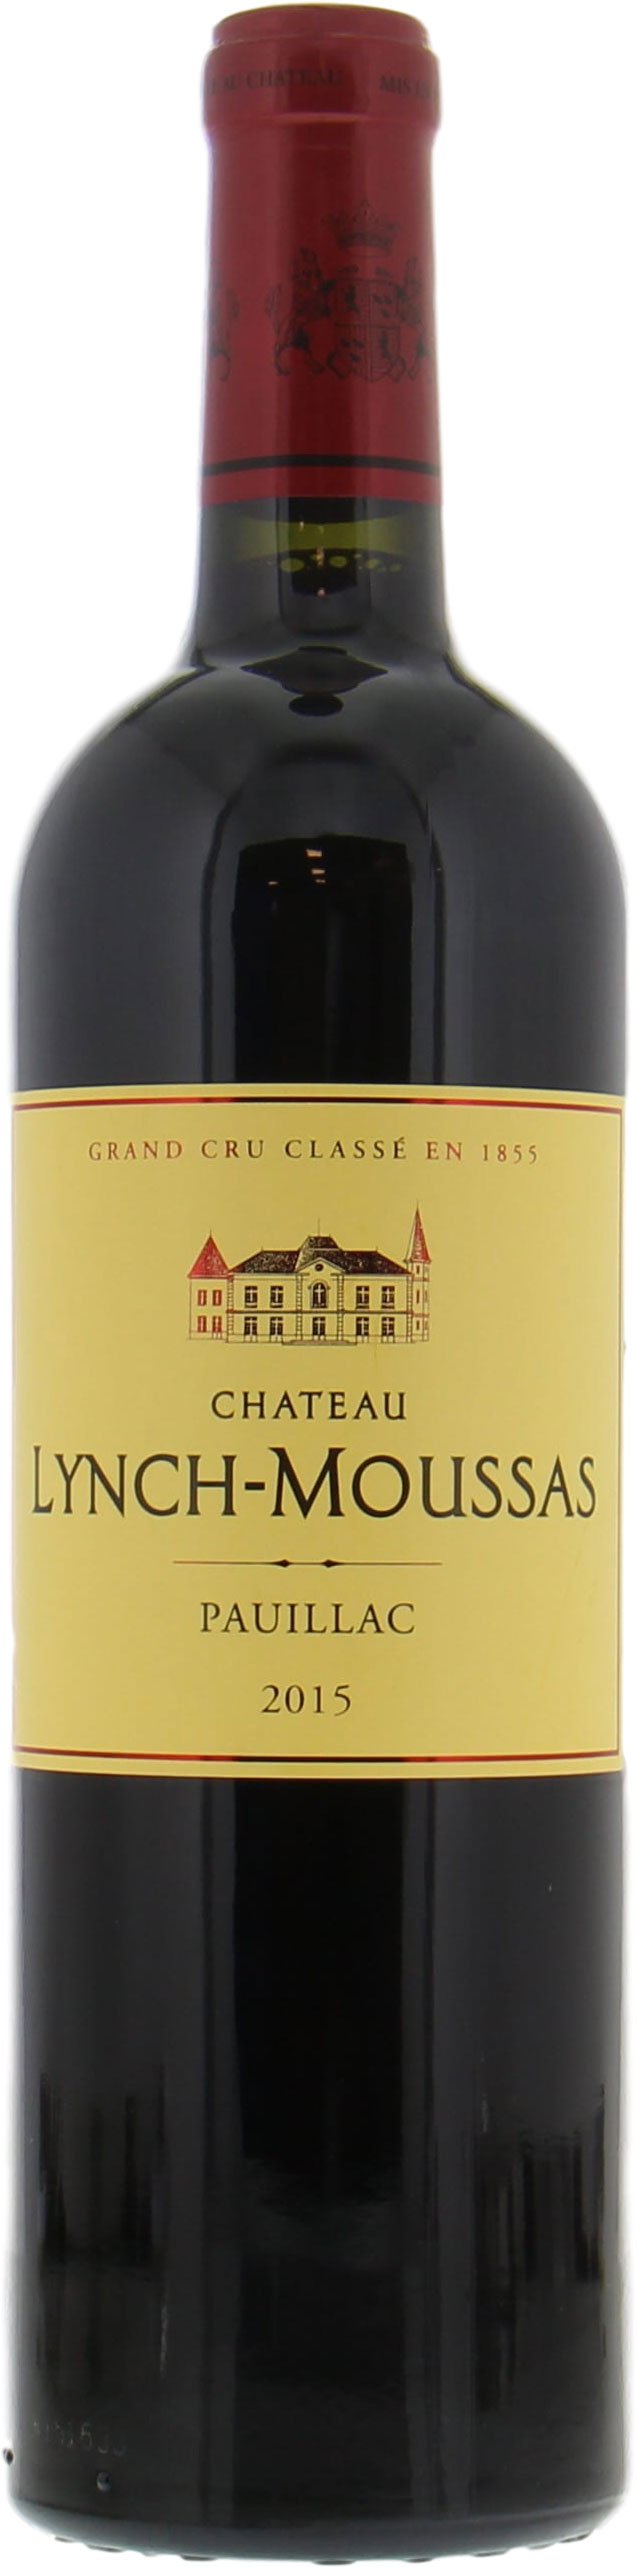 Chateau Lynch-Moussas - Chateau Lynch-Moussas 2015